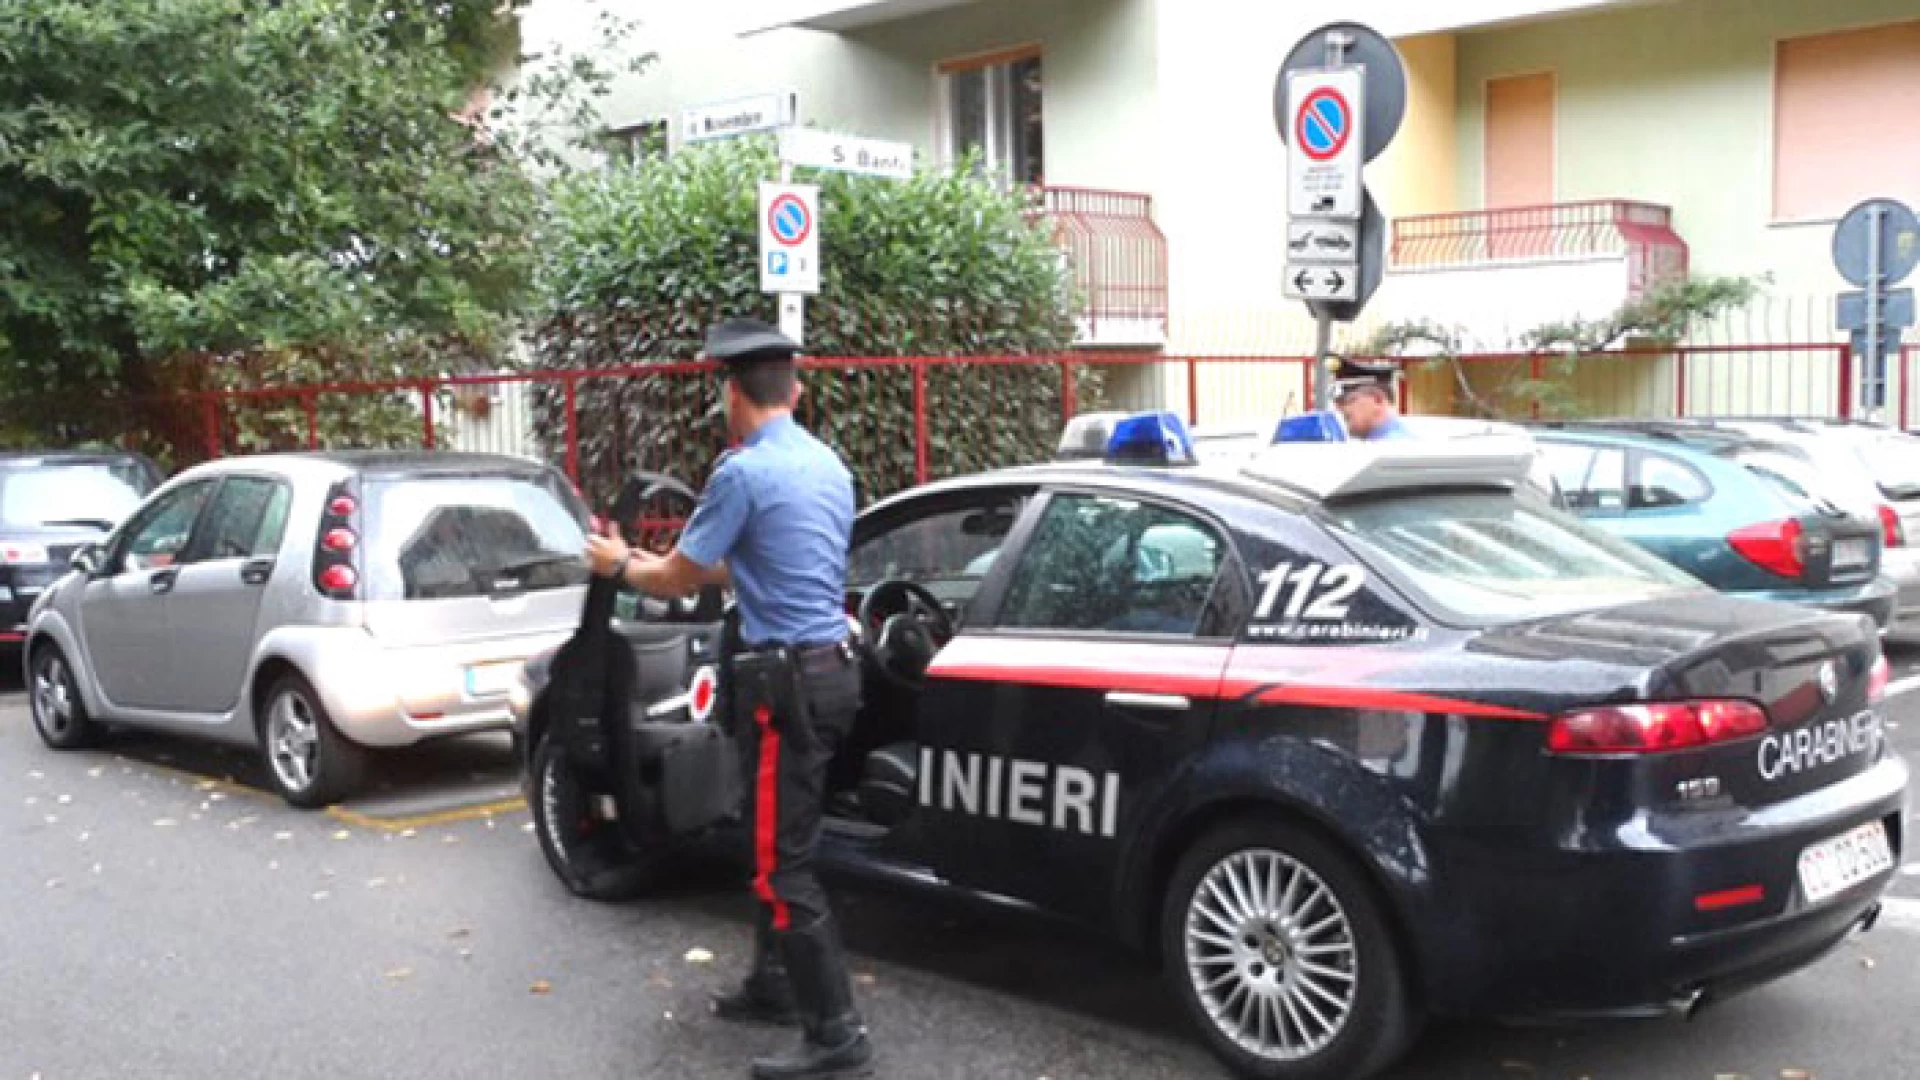 Forlì del Sannio: Maltrattamenti in famiglia, padre padrone denunciato dai Carabinieri.